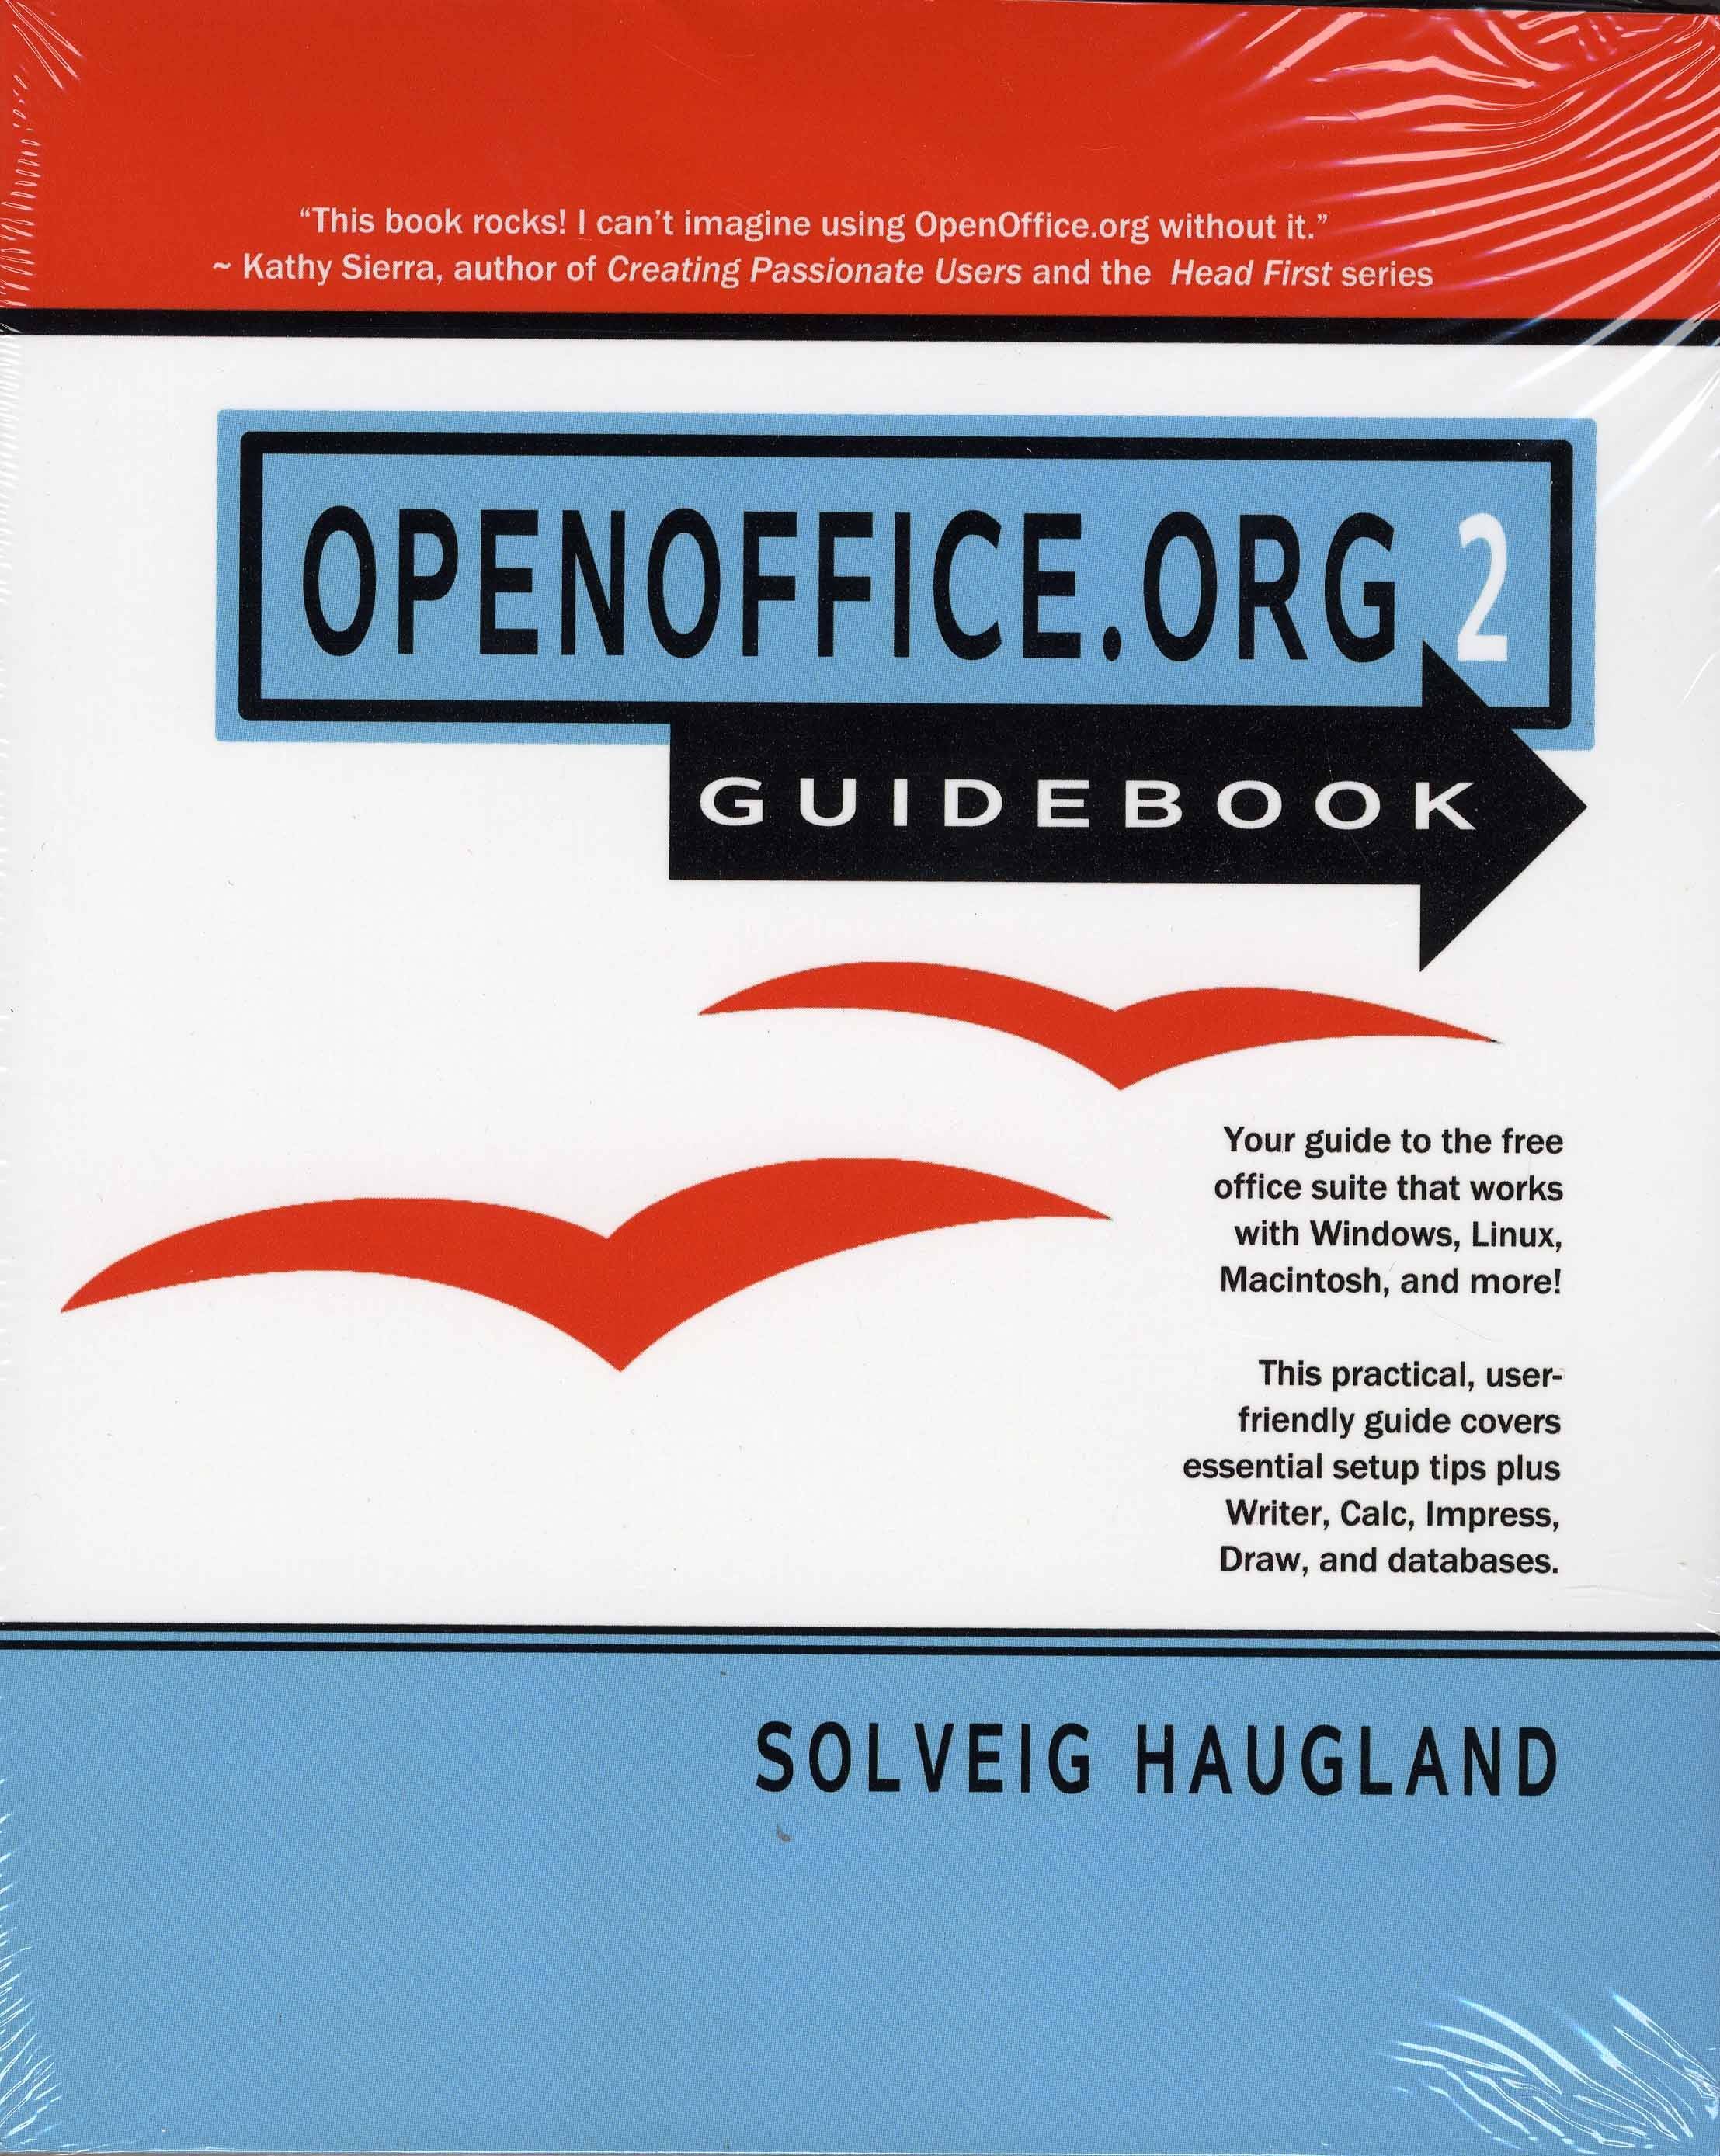 OpenOffice.org 2 Guidebook